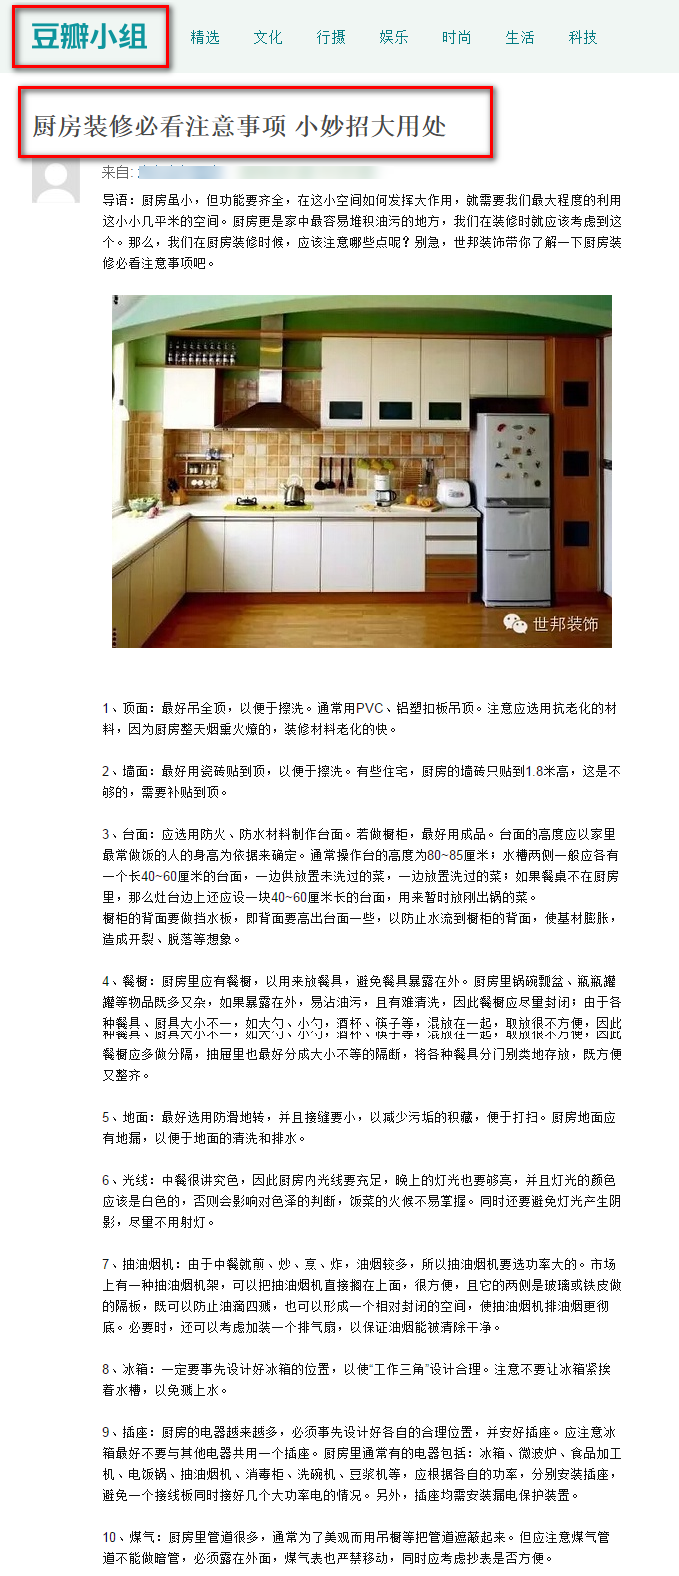 杭州世邦装饰设计工程有限公司